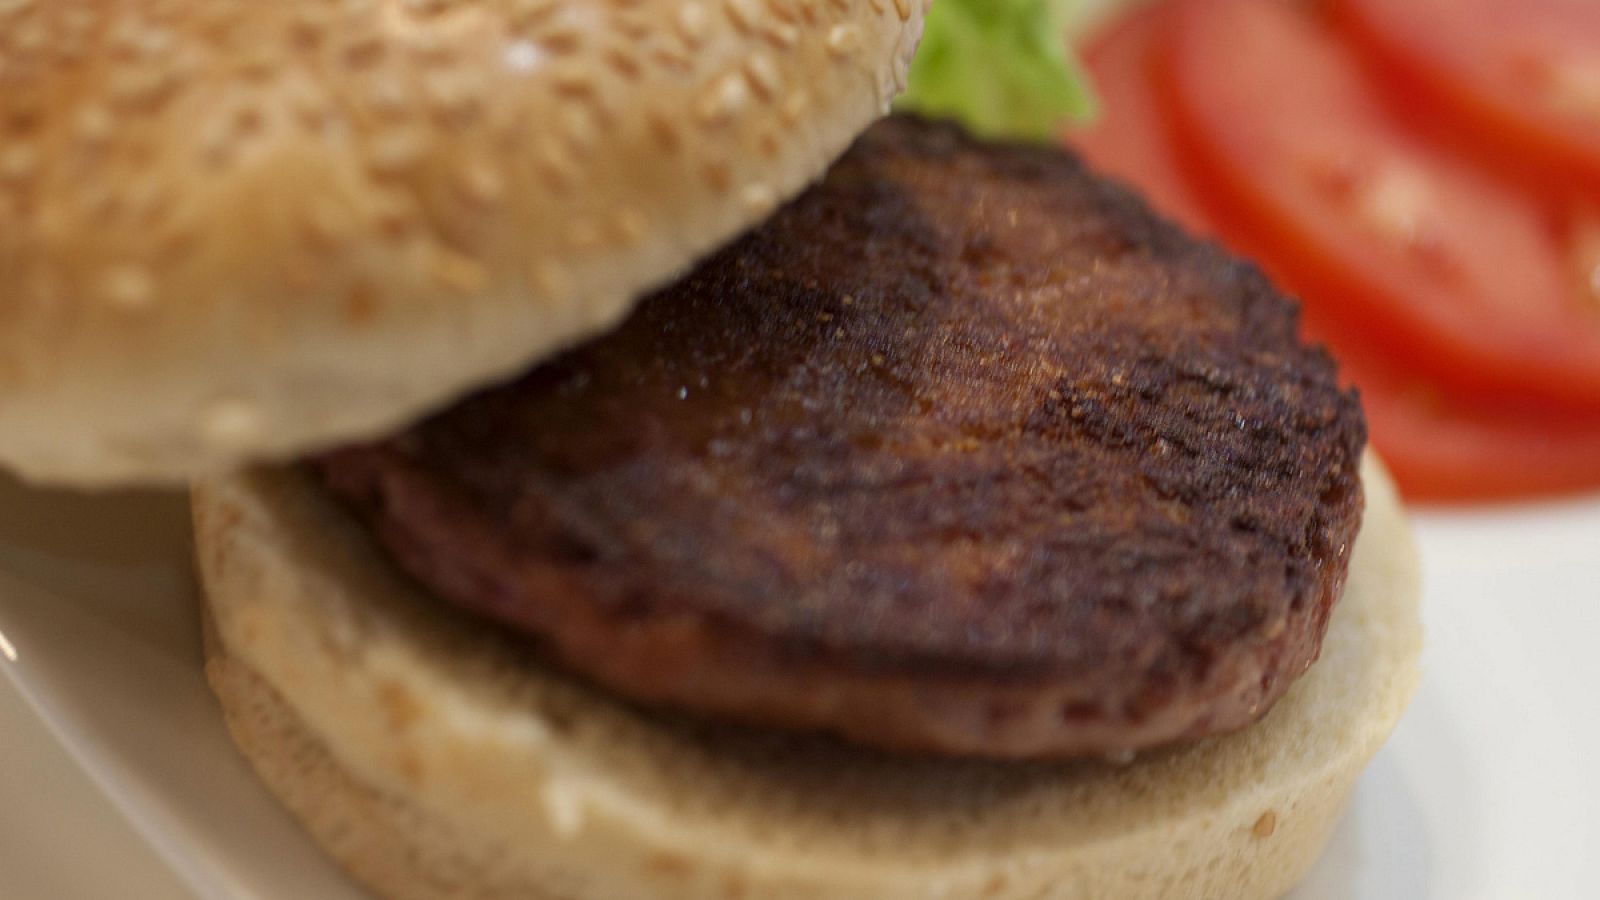 El organismo humano podría absorber hasta un 14% del calcio añadido a las hamburguesas.